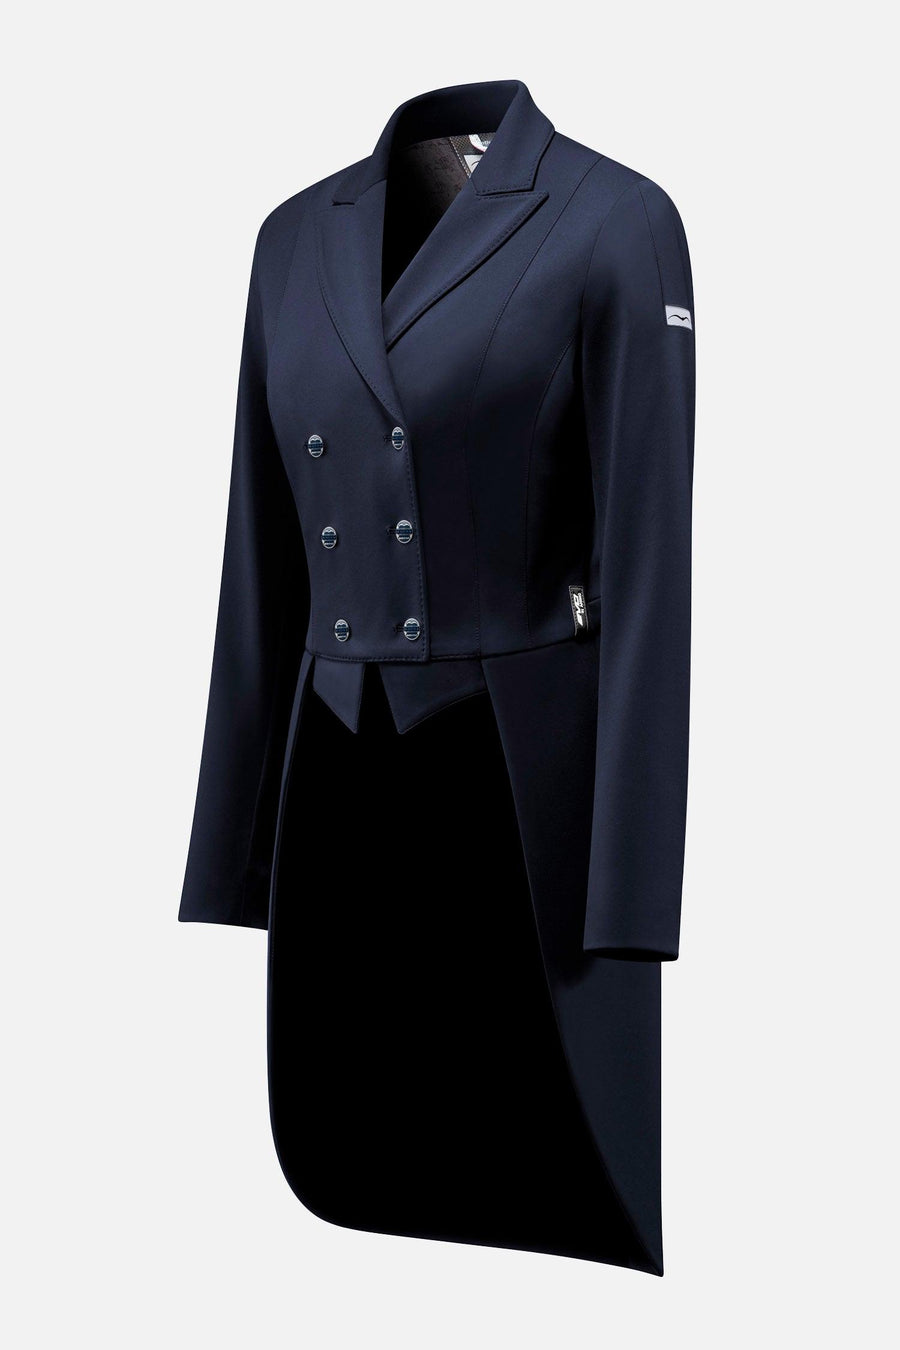 Animo Lageo tailcoat for women - HorseworldEU